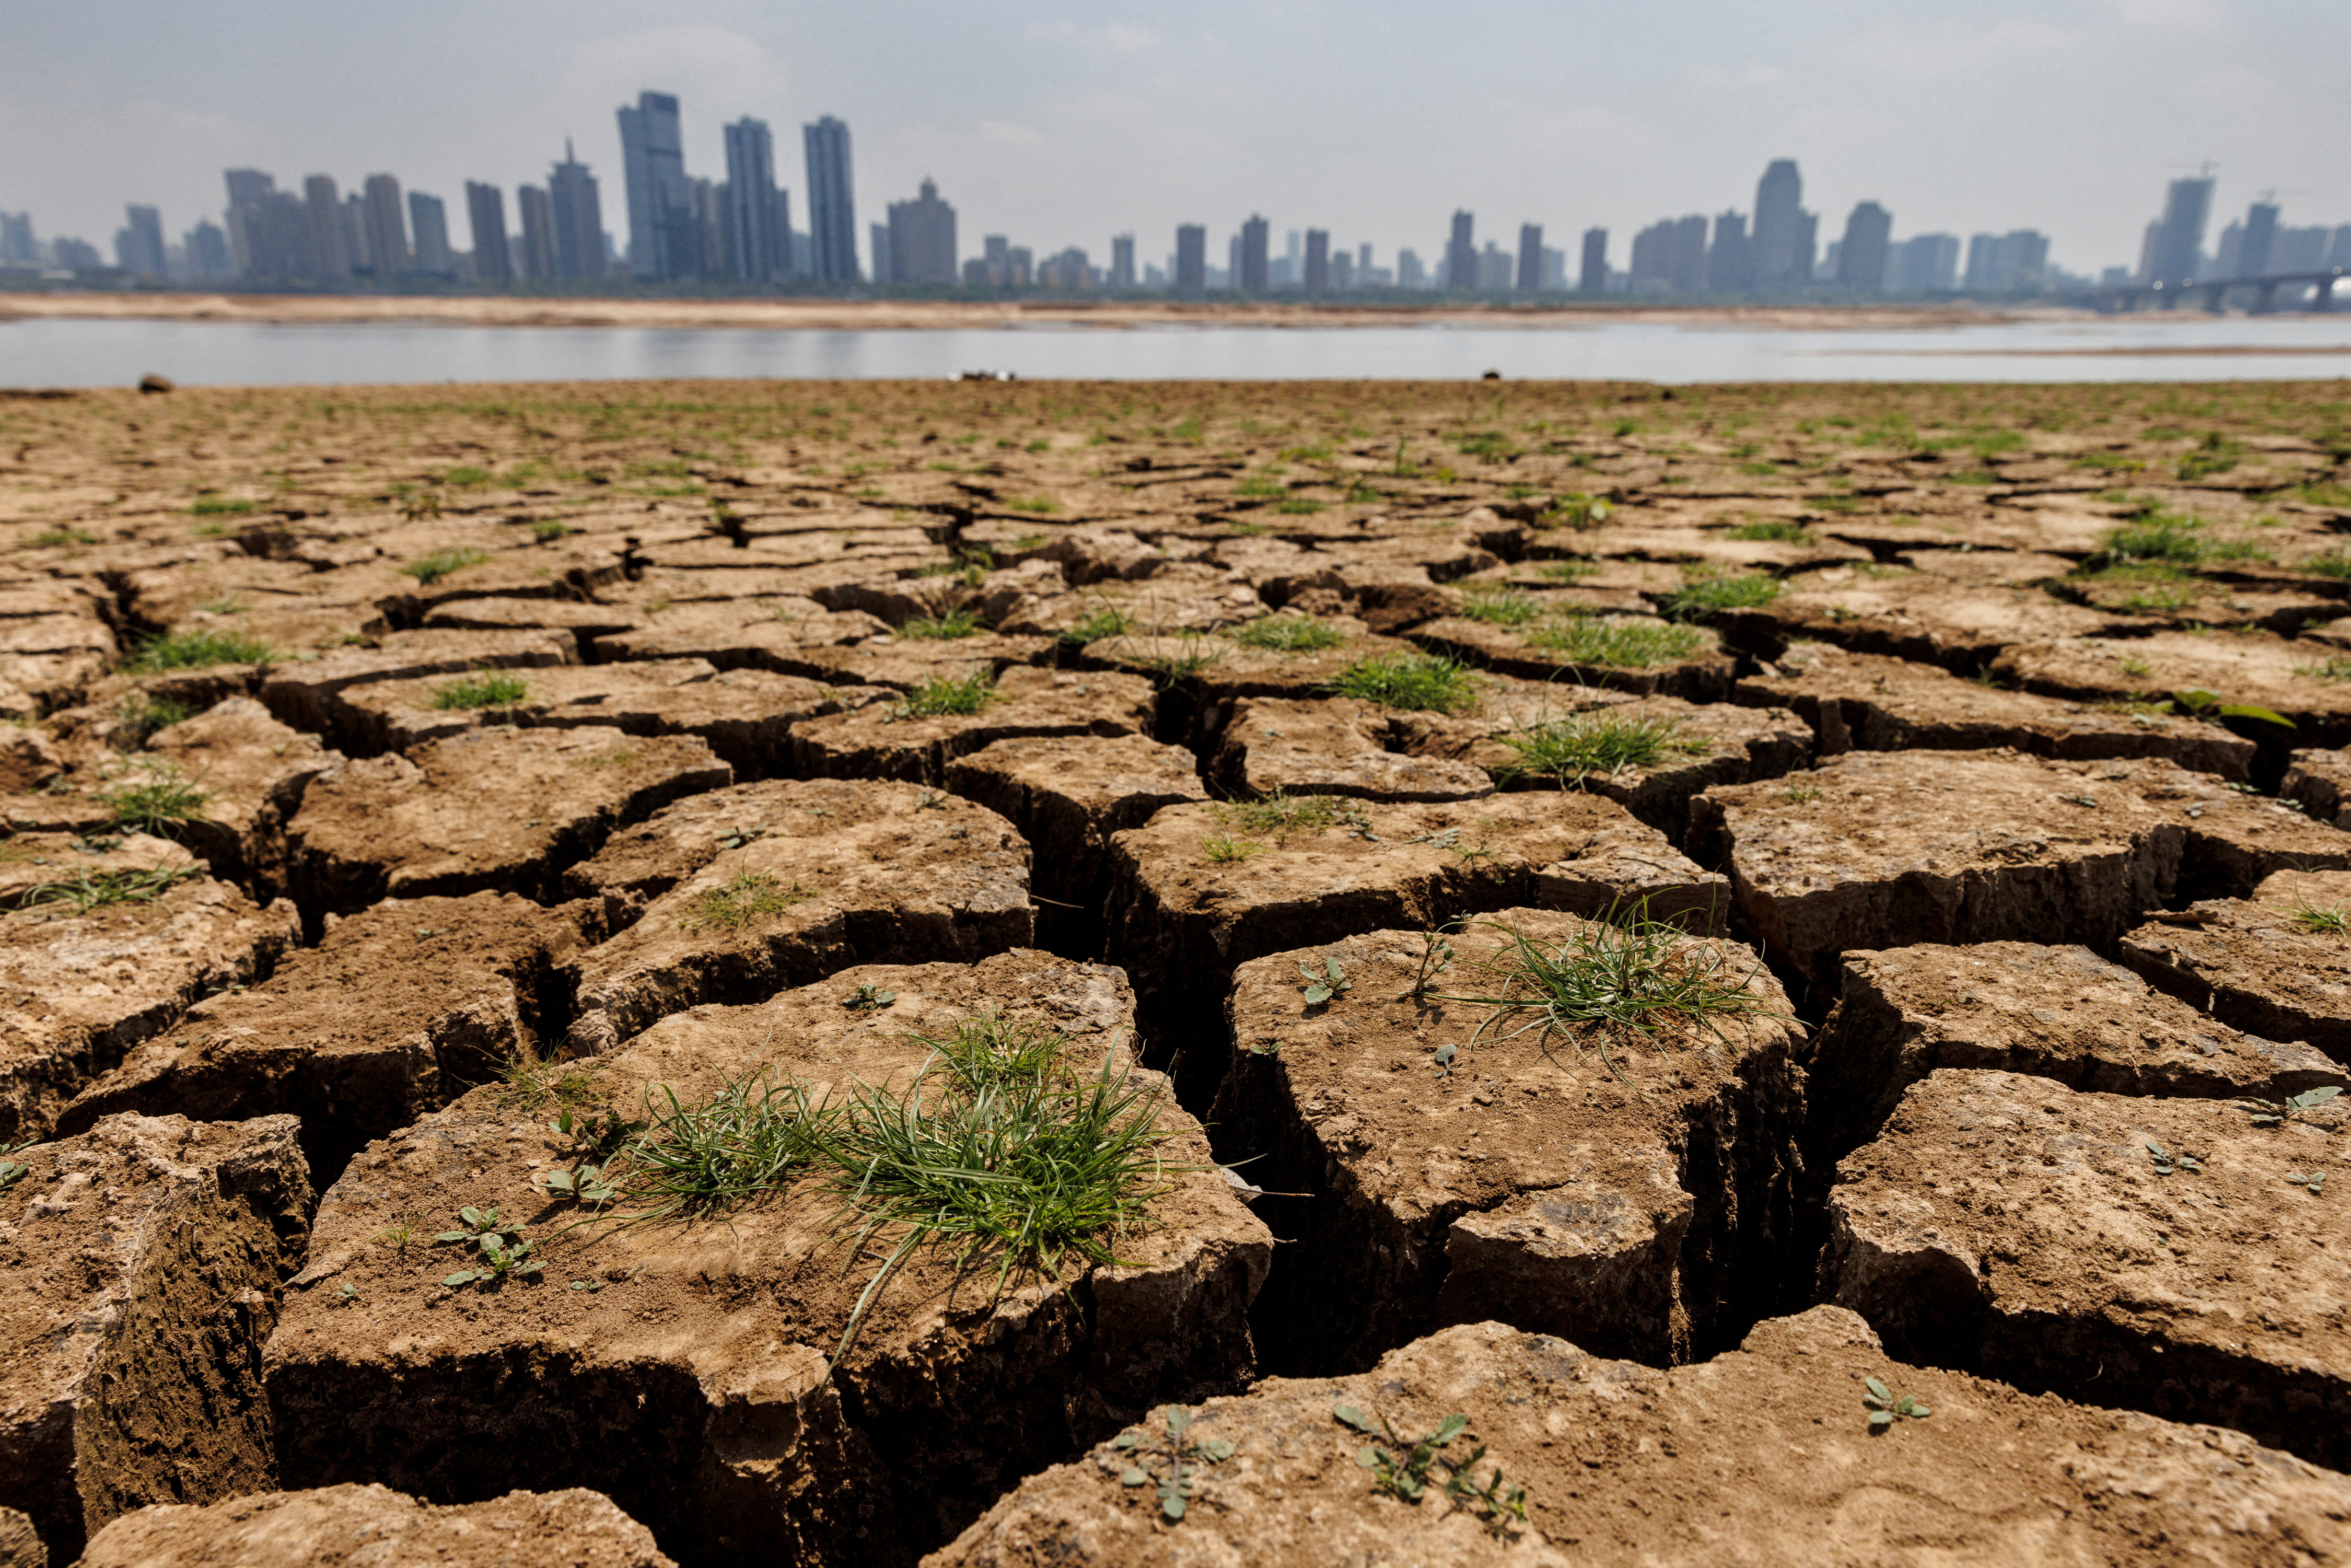 Las sequías repentinas comienzan y se intensifican rápidamente (REUTERS/Thomas Peter//File Photo)